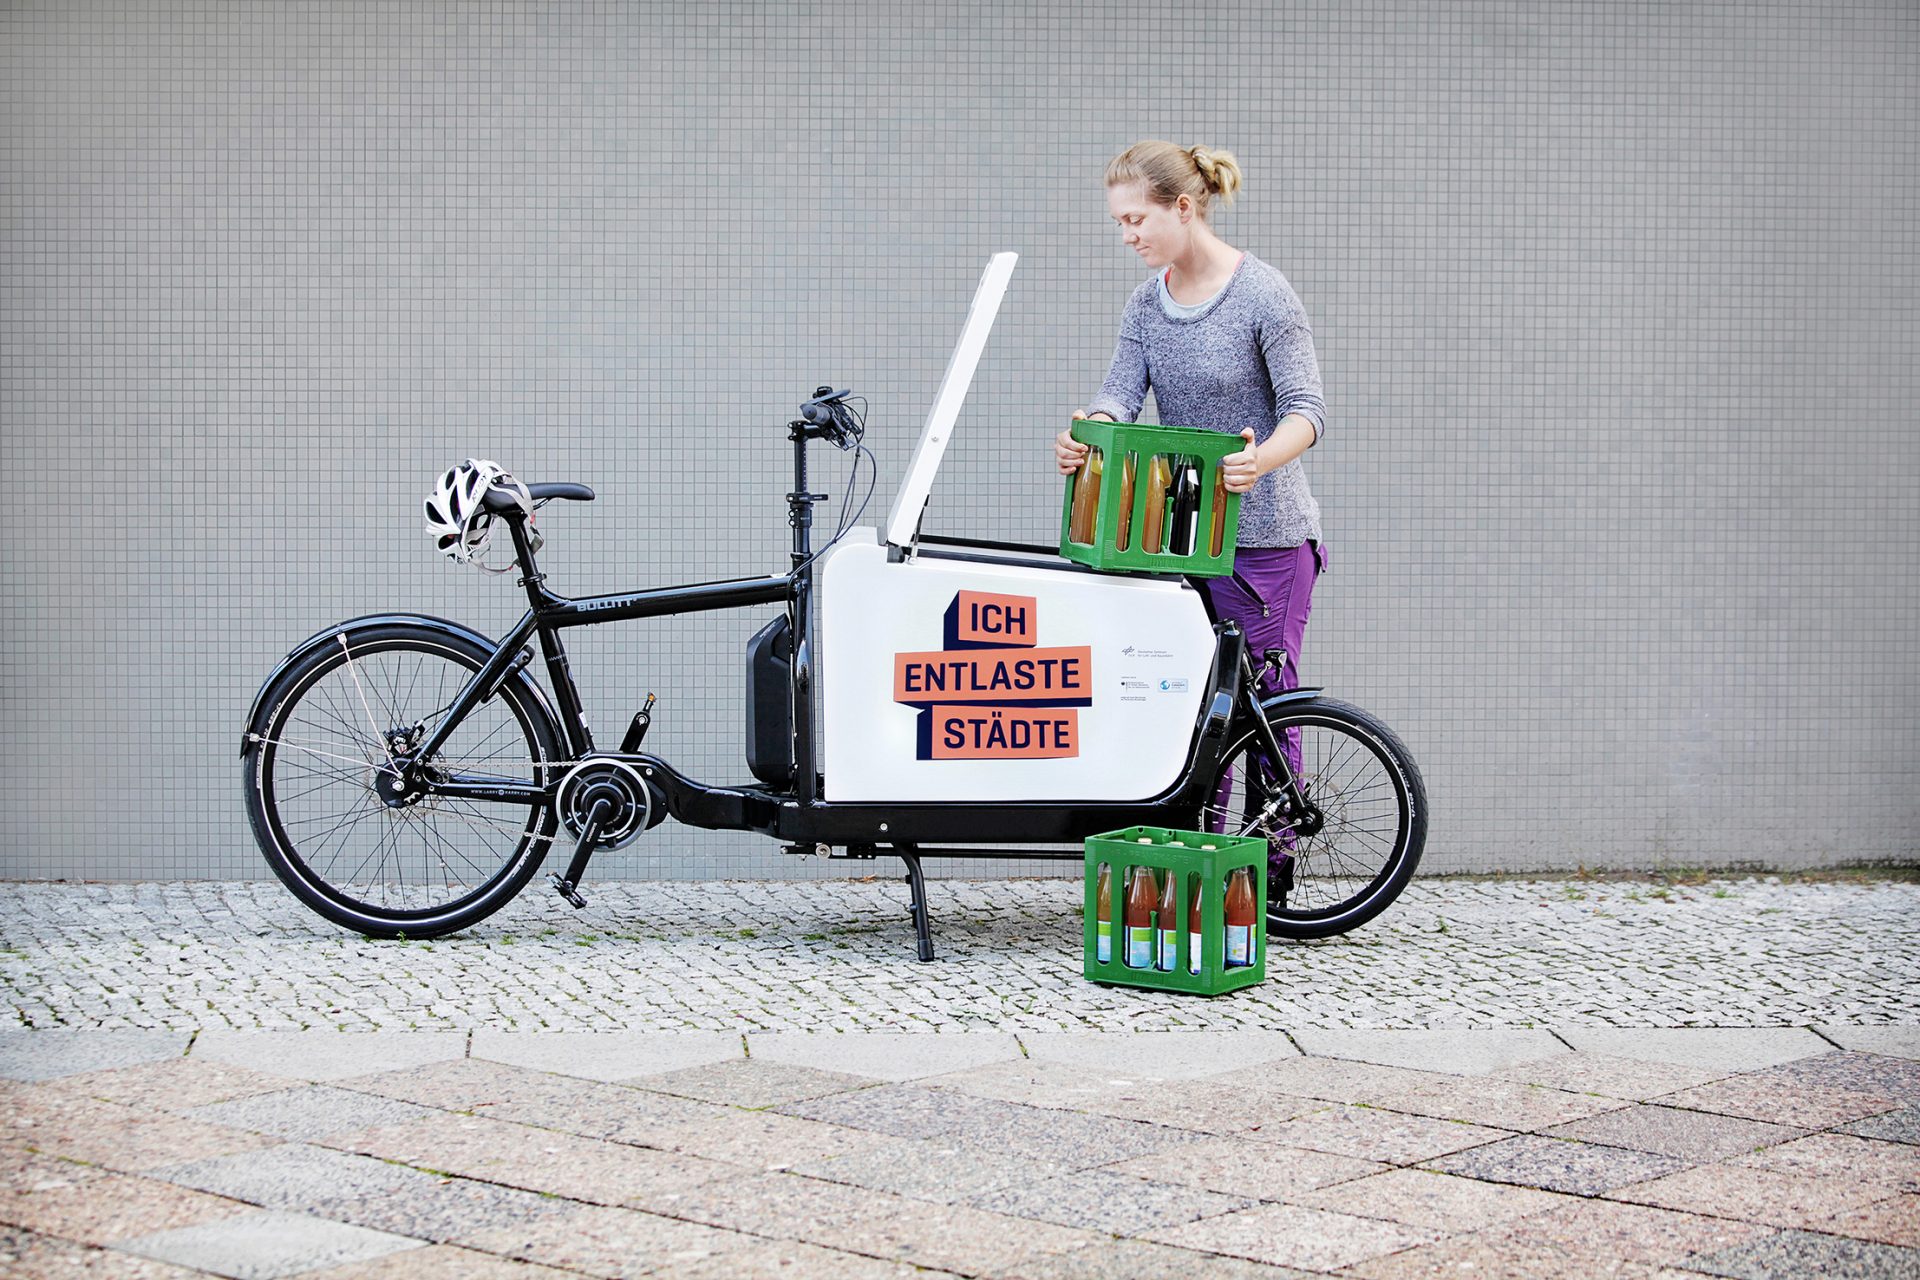 Una mujer carga una bicicleta de carga con cajas de bebidas. En la bicicleta va 